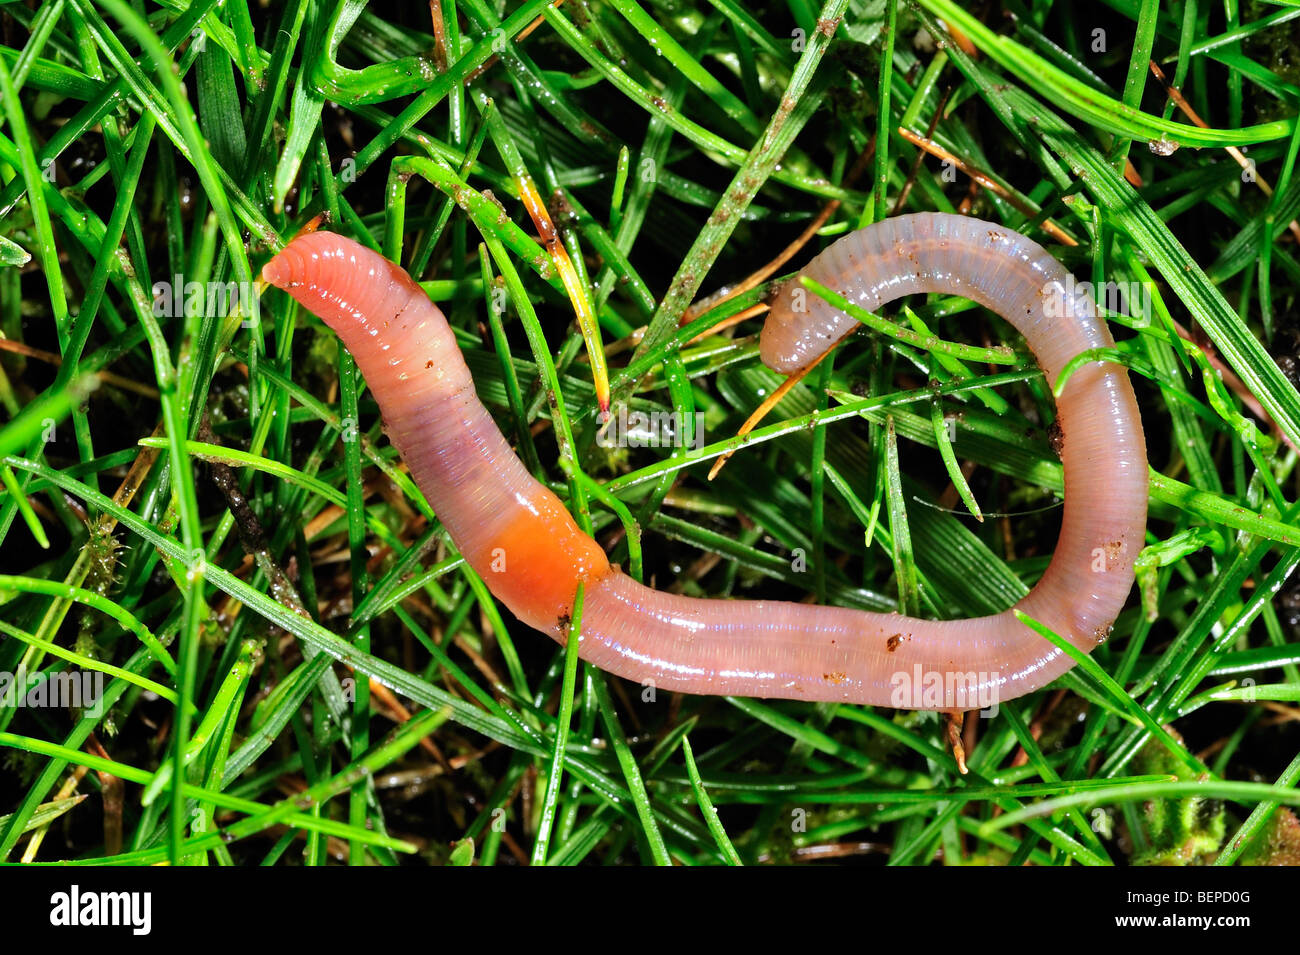 Rosy Tipped Worm Aporrectodea Rosea On The Grass In Garden Stock